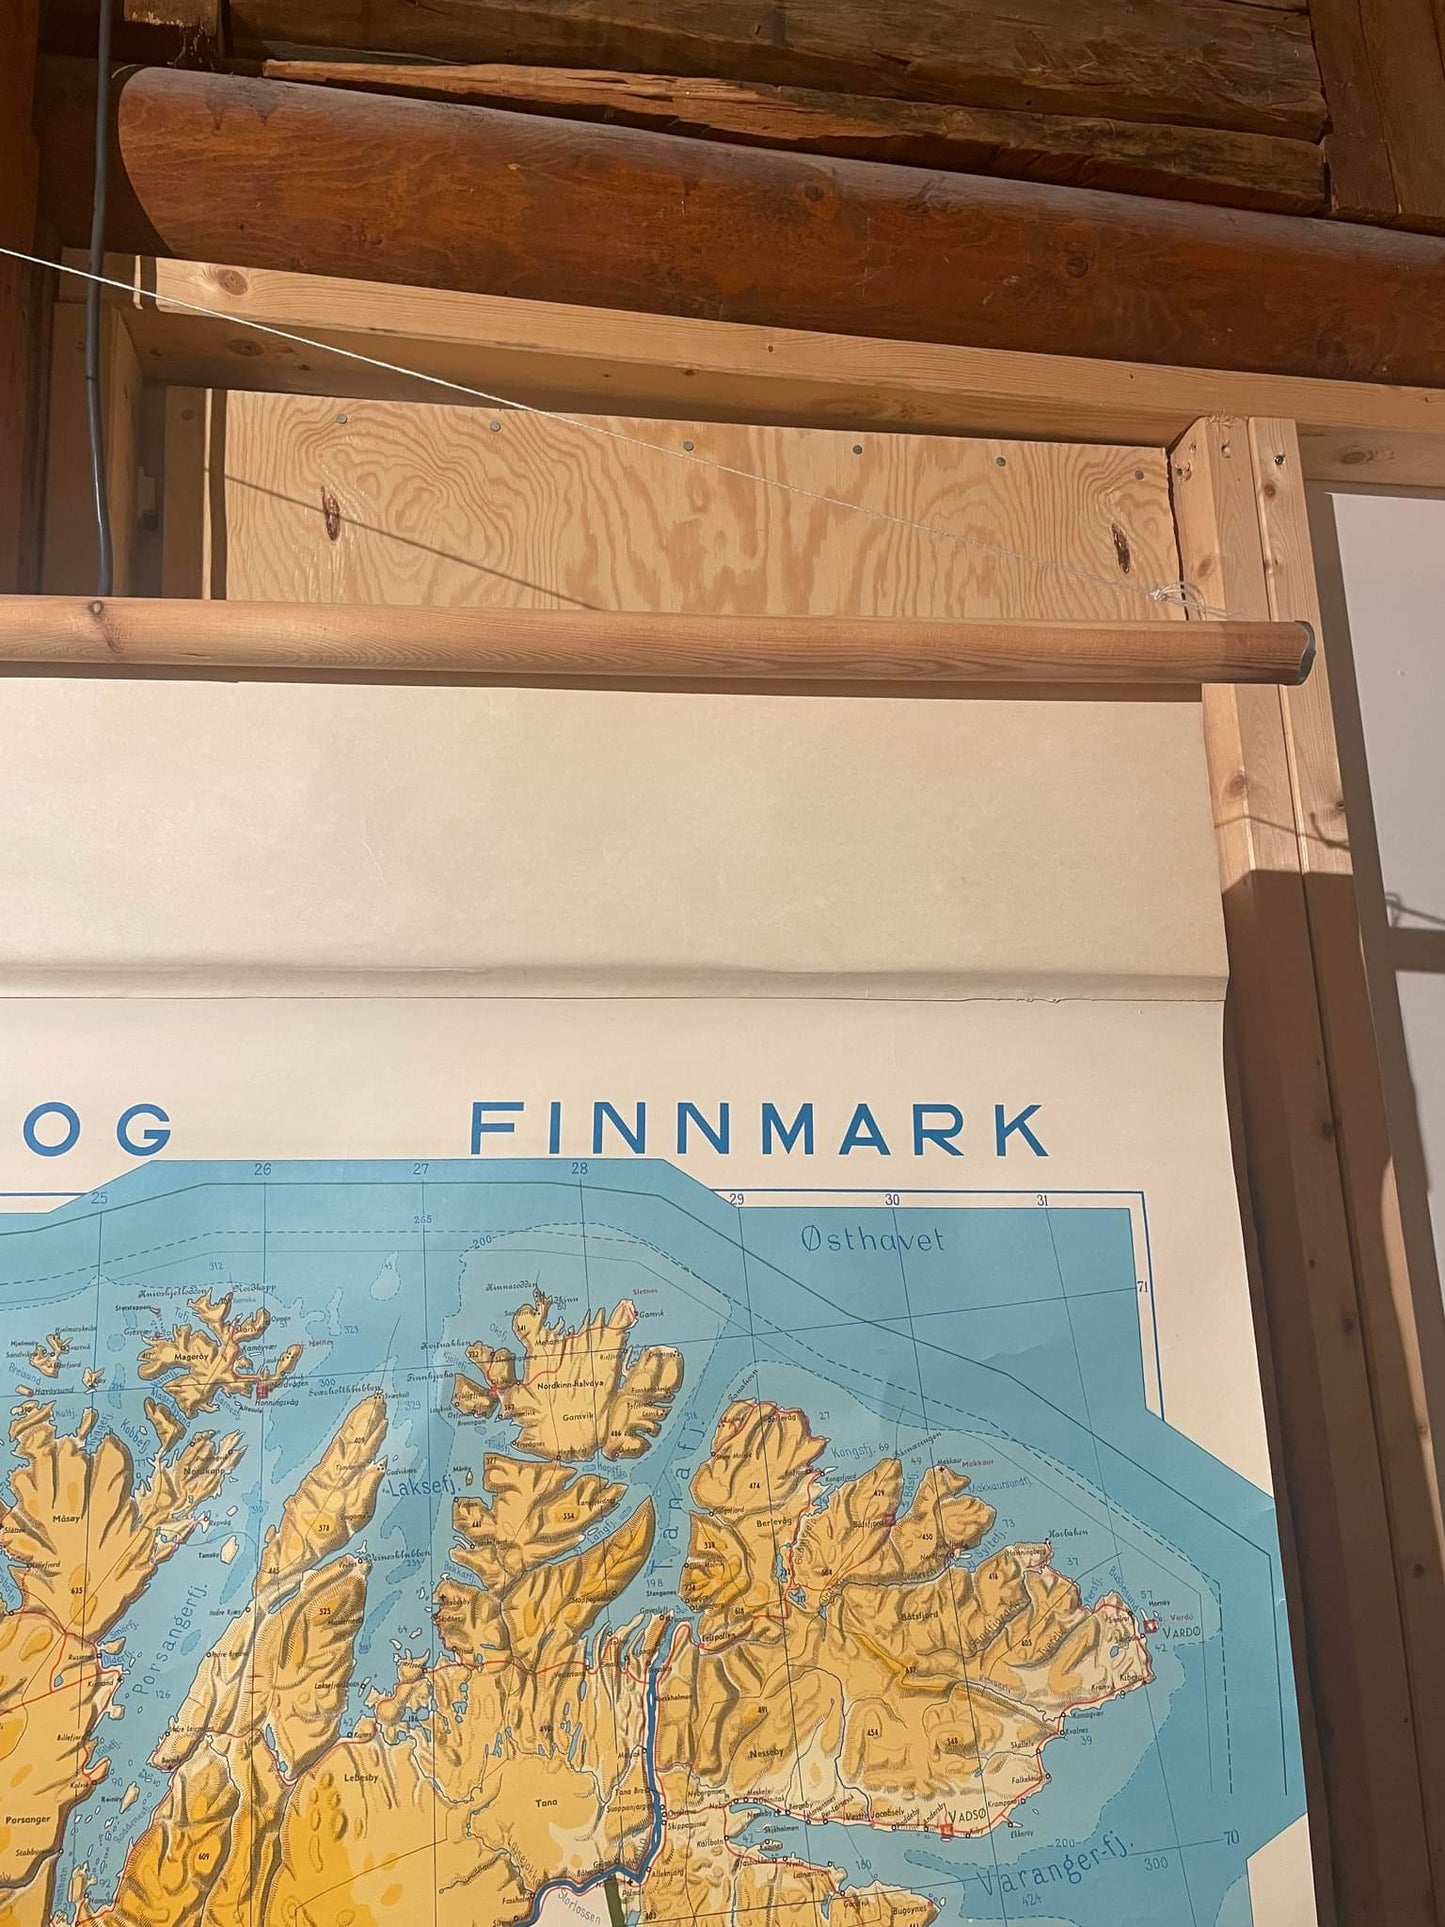 Skolekart vintage Troms & Finnmark 1968